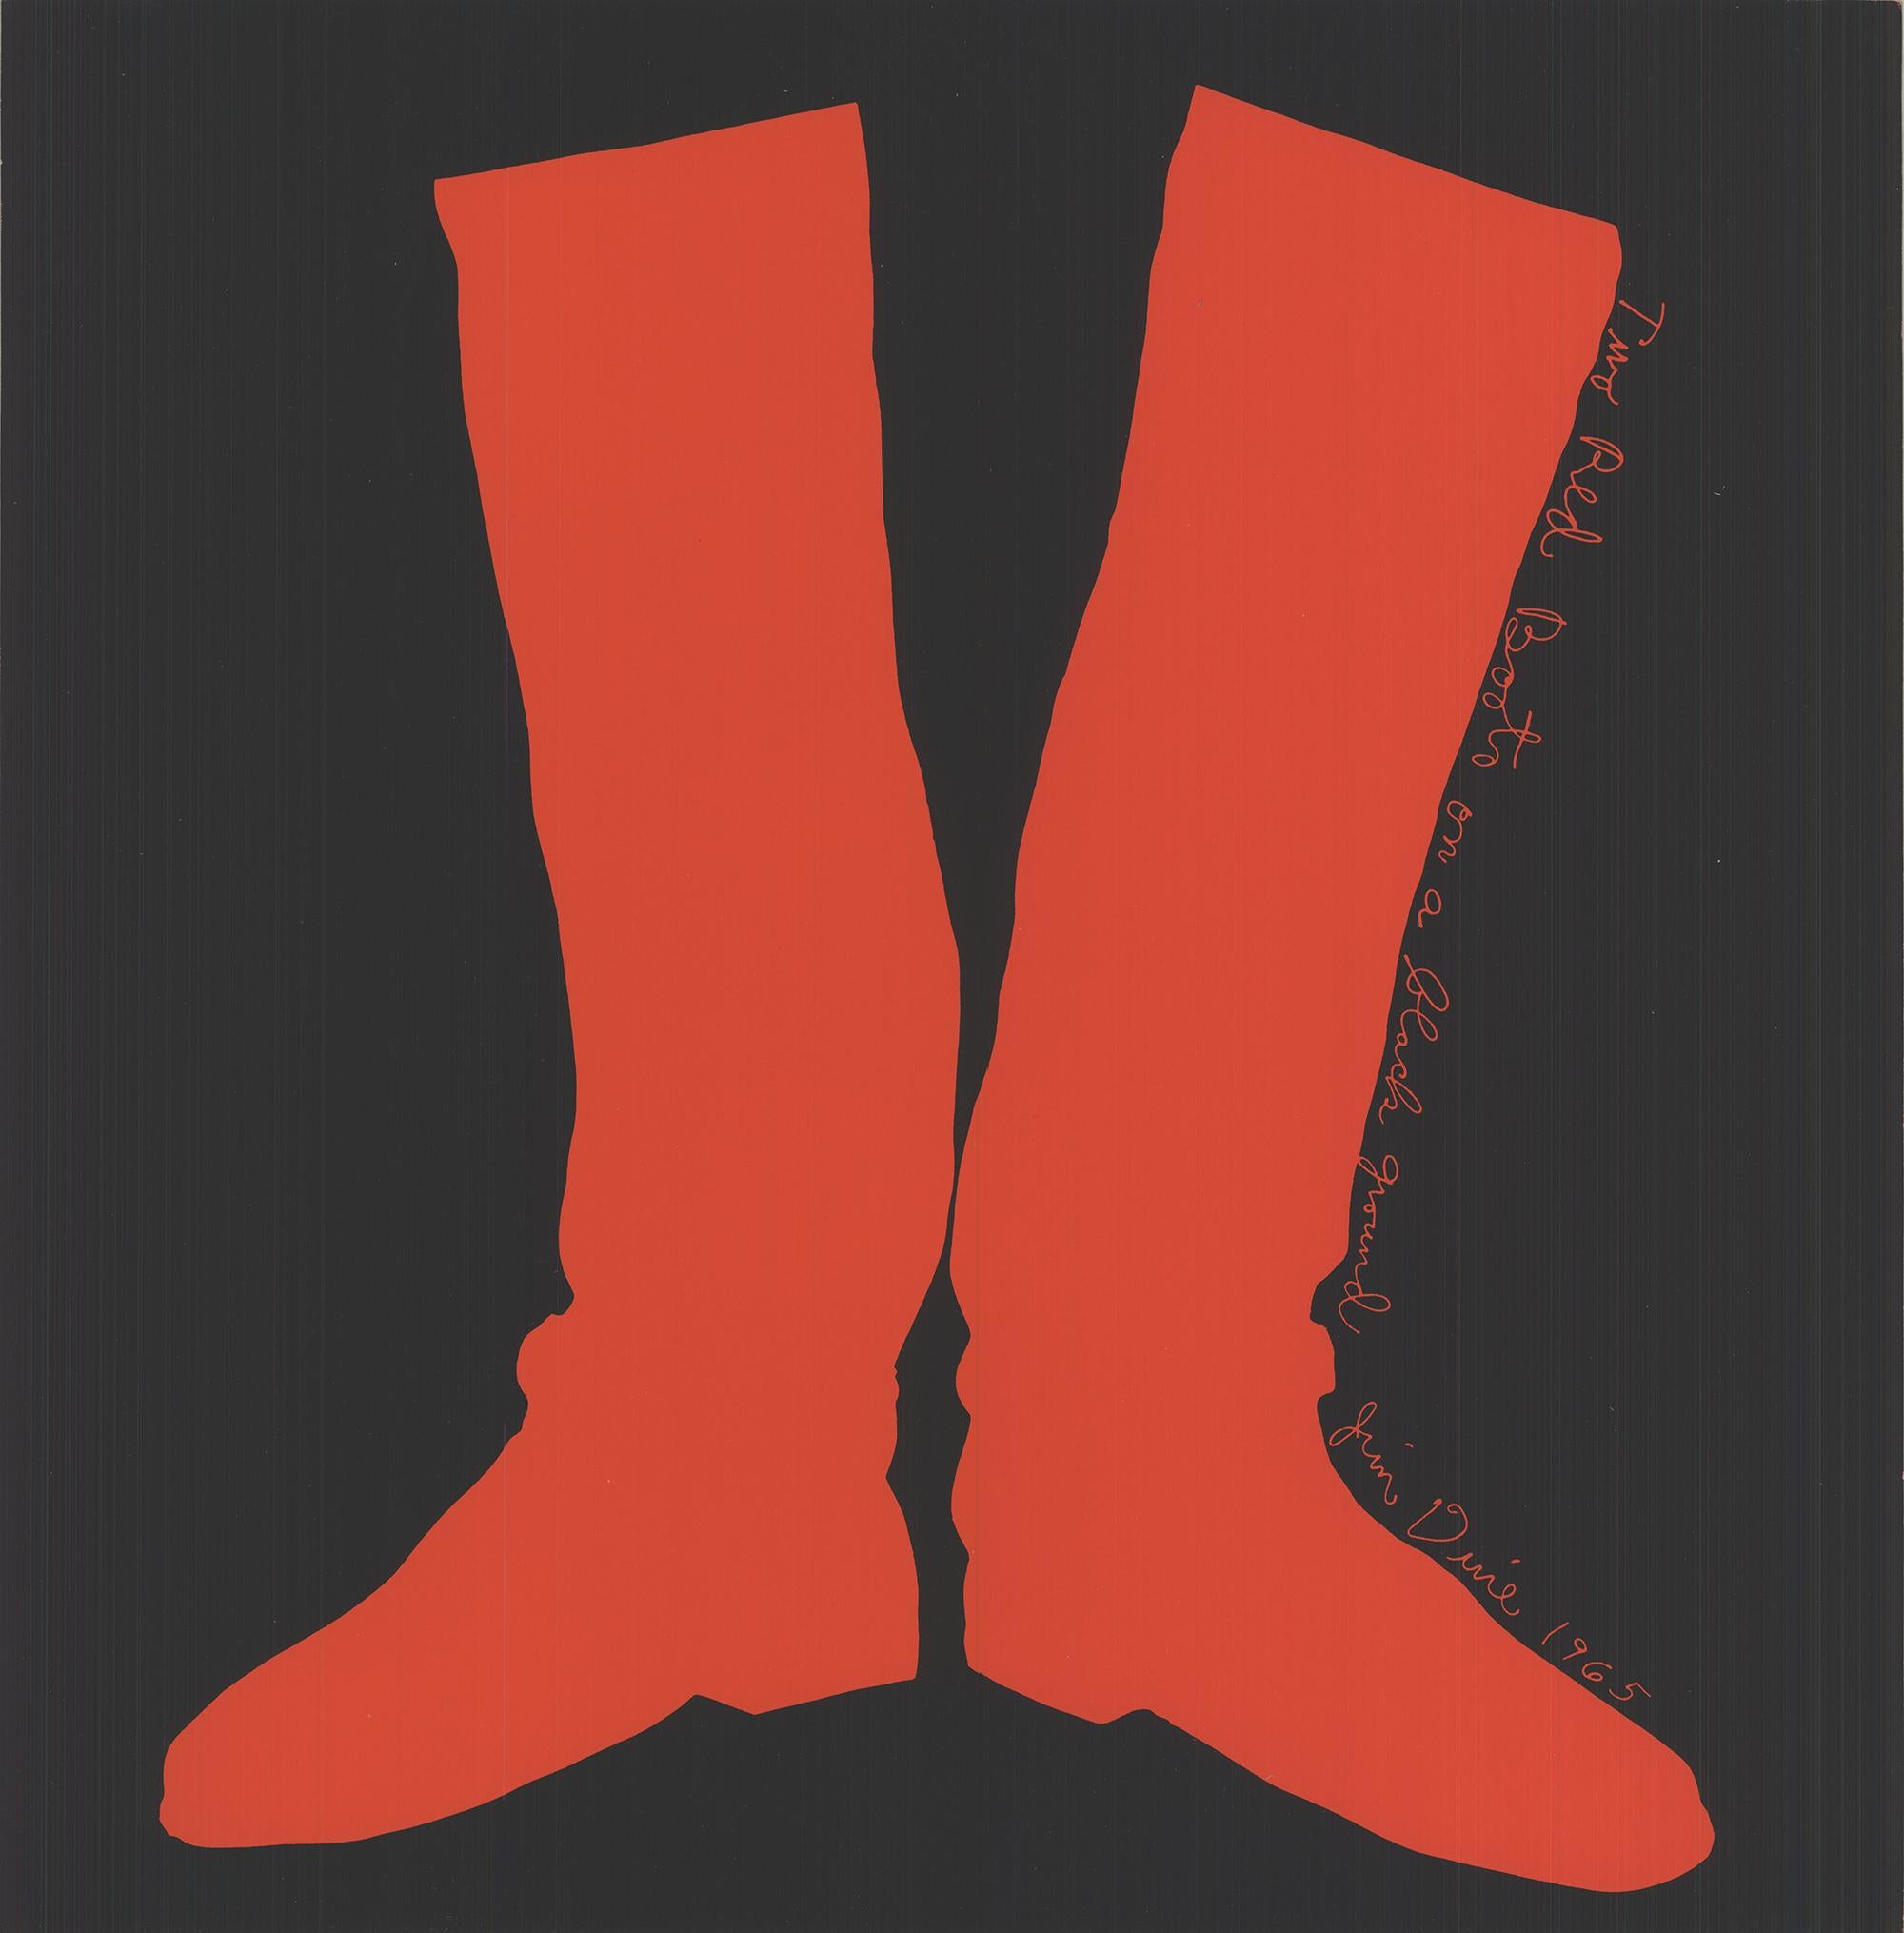 The Red Boots on a Black Ground (Les bottes rouges sur un sol noir), 1968 SERIGRAPHIE ORIGINALE - Print de Jim Dine